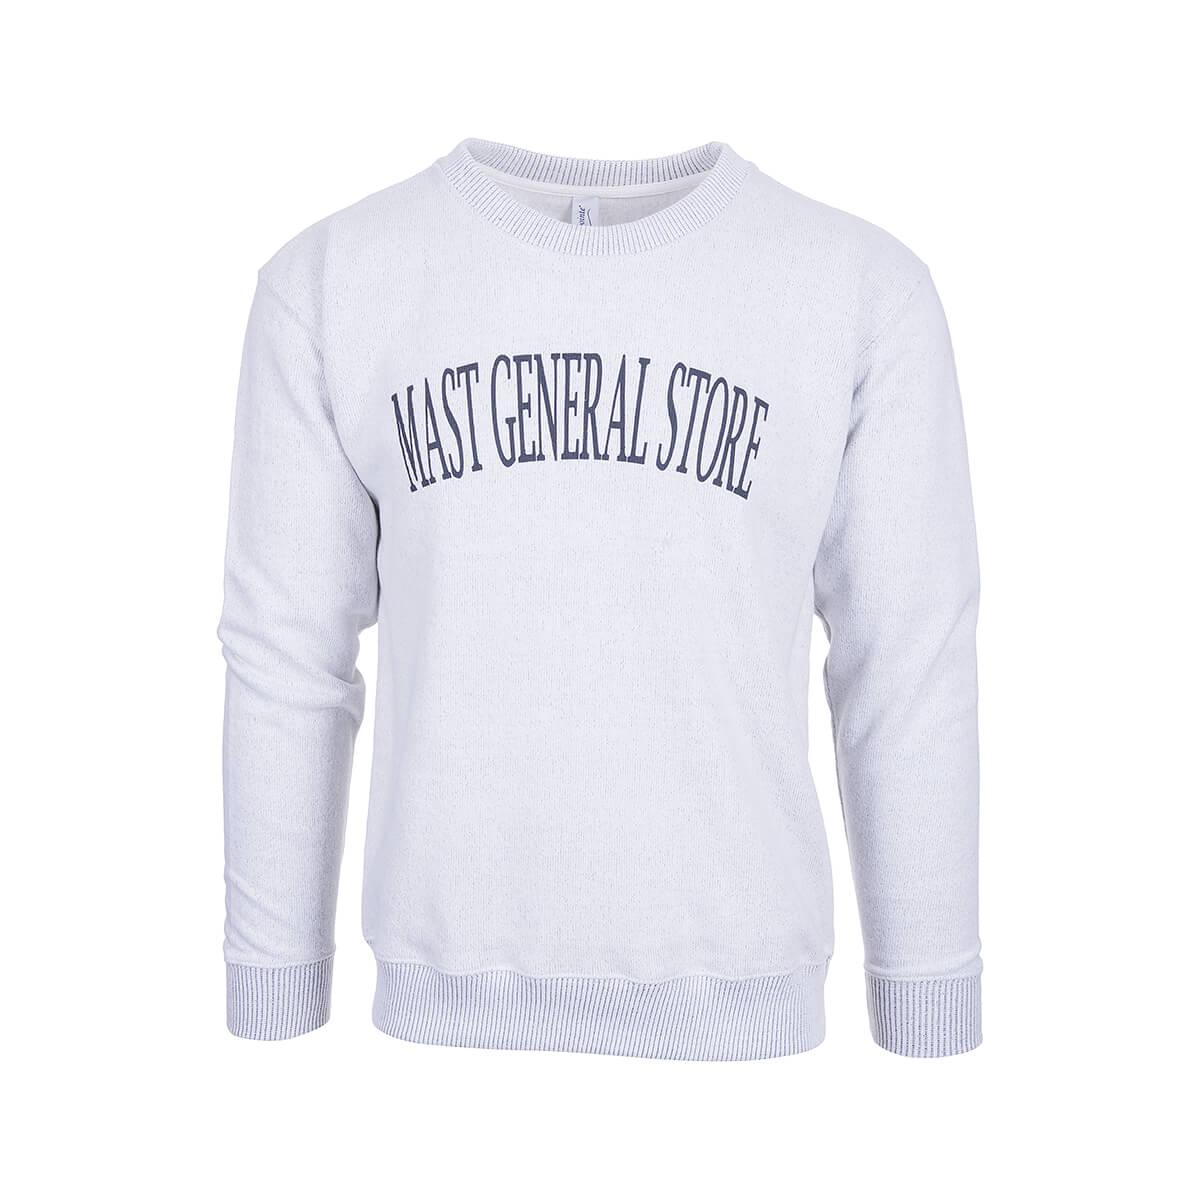  Mast General Store Nantucket Crew Neck Long Sleeve Sweatshirt